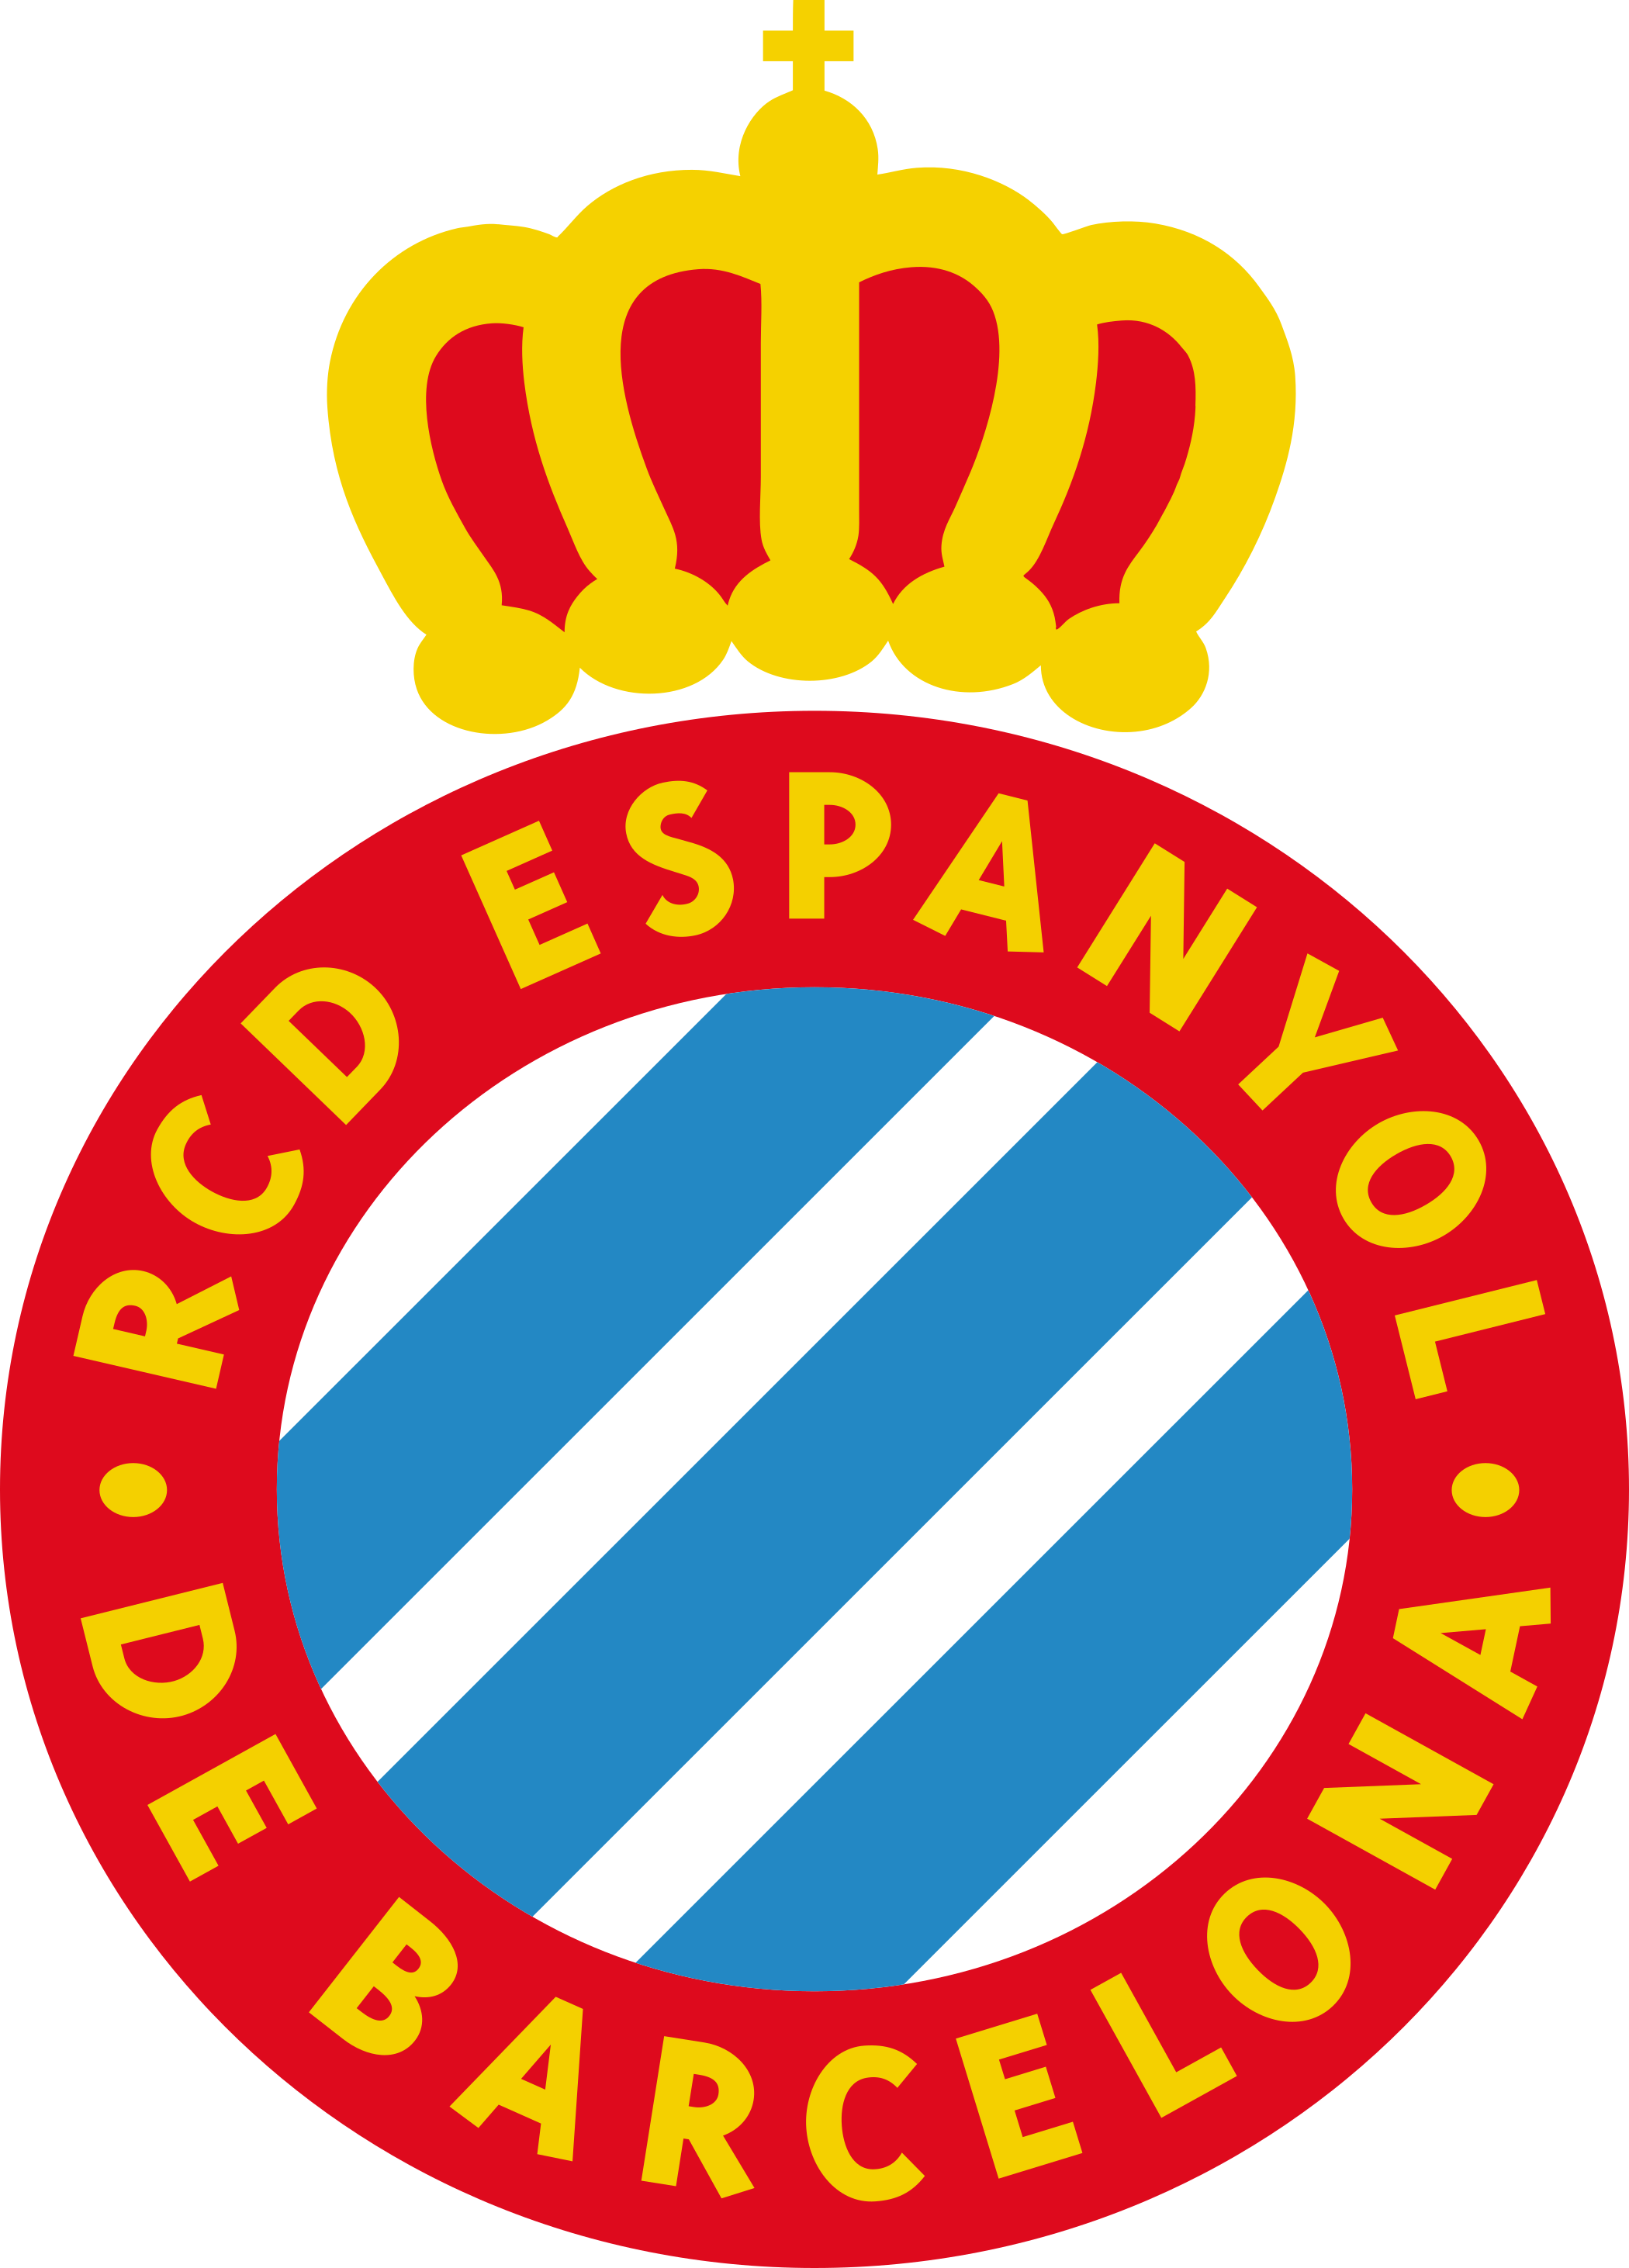 rcd espanyol logo escudo 1 - Espanyol Logo - Escudo Real Club Deportivo Espanyol